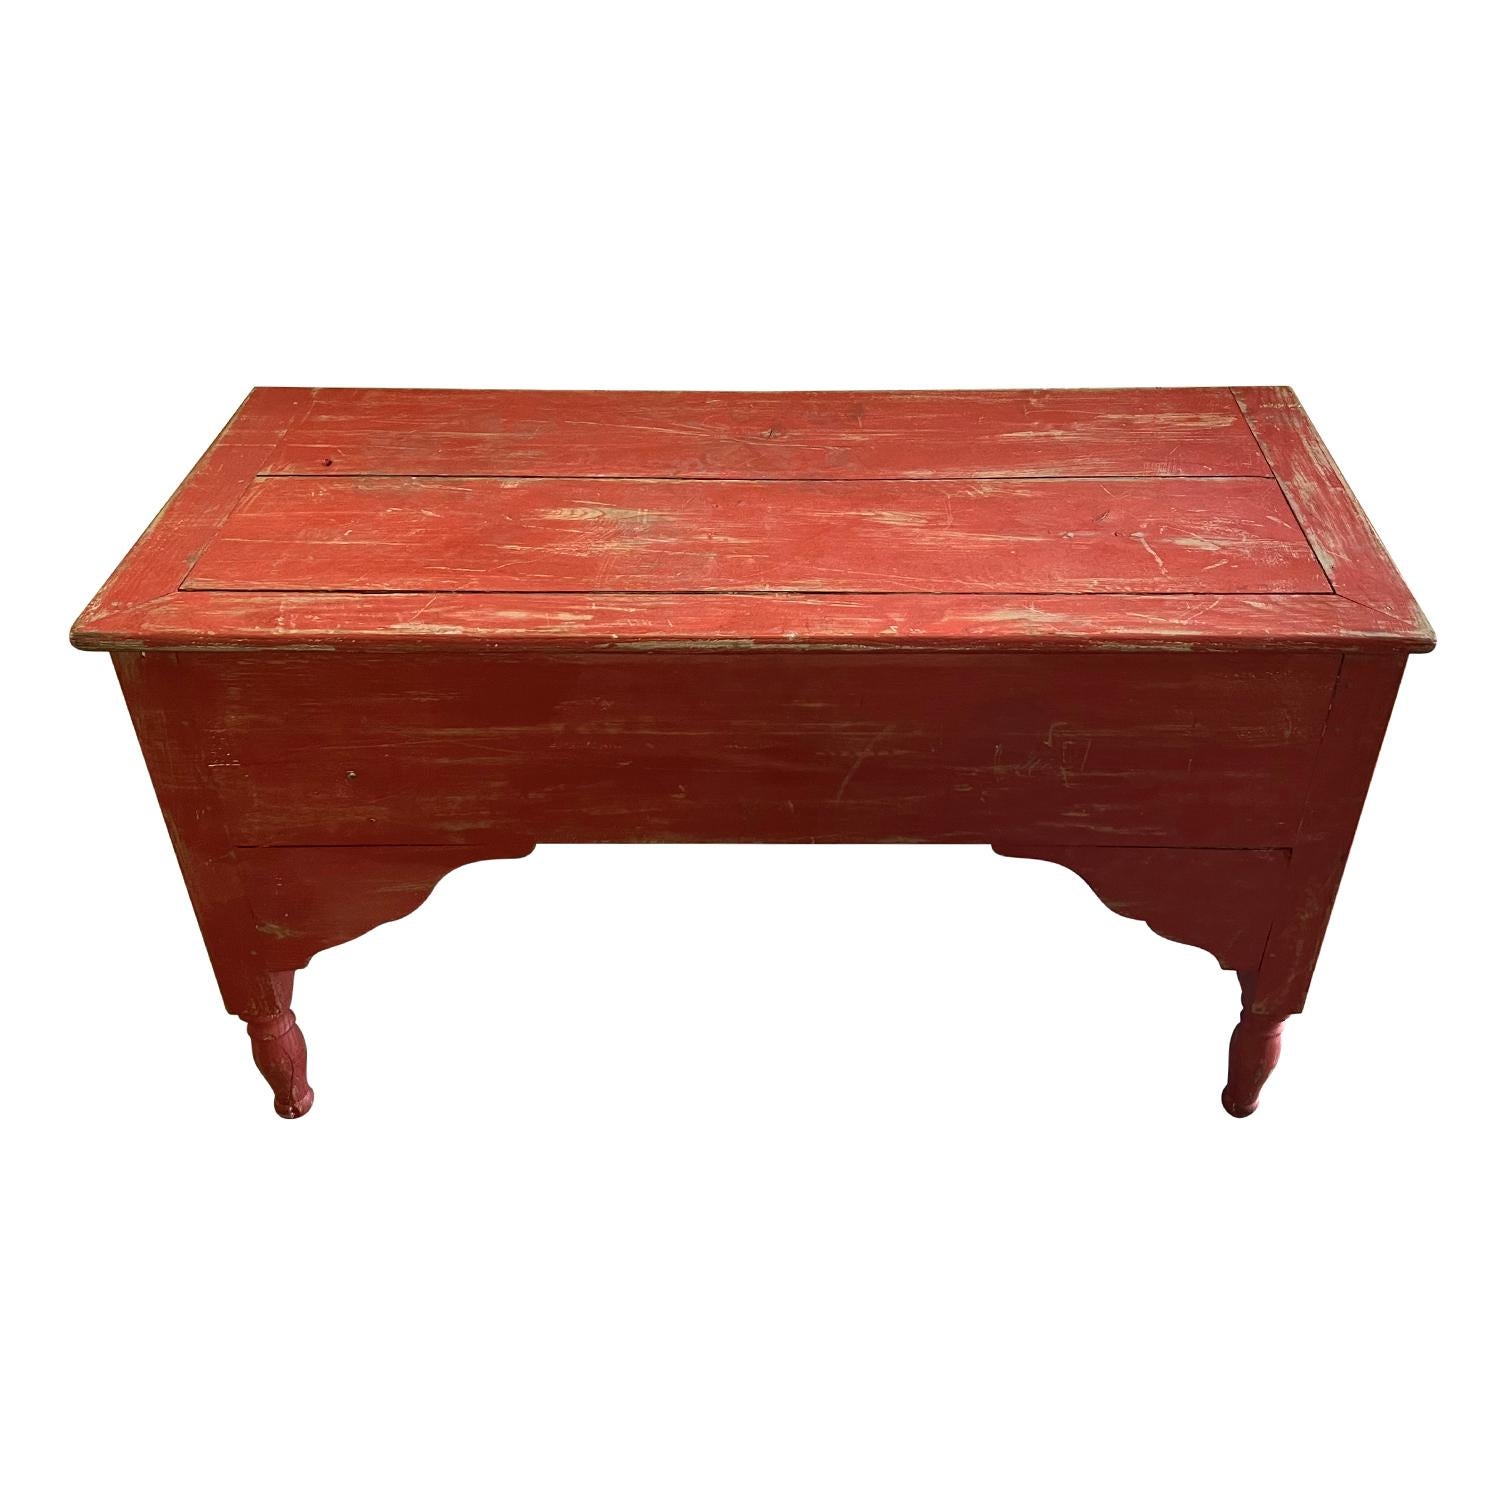 Anfang des 19. Jahrhunderts, ein seltener Casseton-Tisch aus der Provence mit charmanten seitlichen Konsolen und handgedrechselten Beinen in lebhafter roter Patina, in gutem Zustand. Dieser antike Konsolentisch im französischen Provinzialstil ist